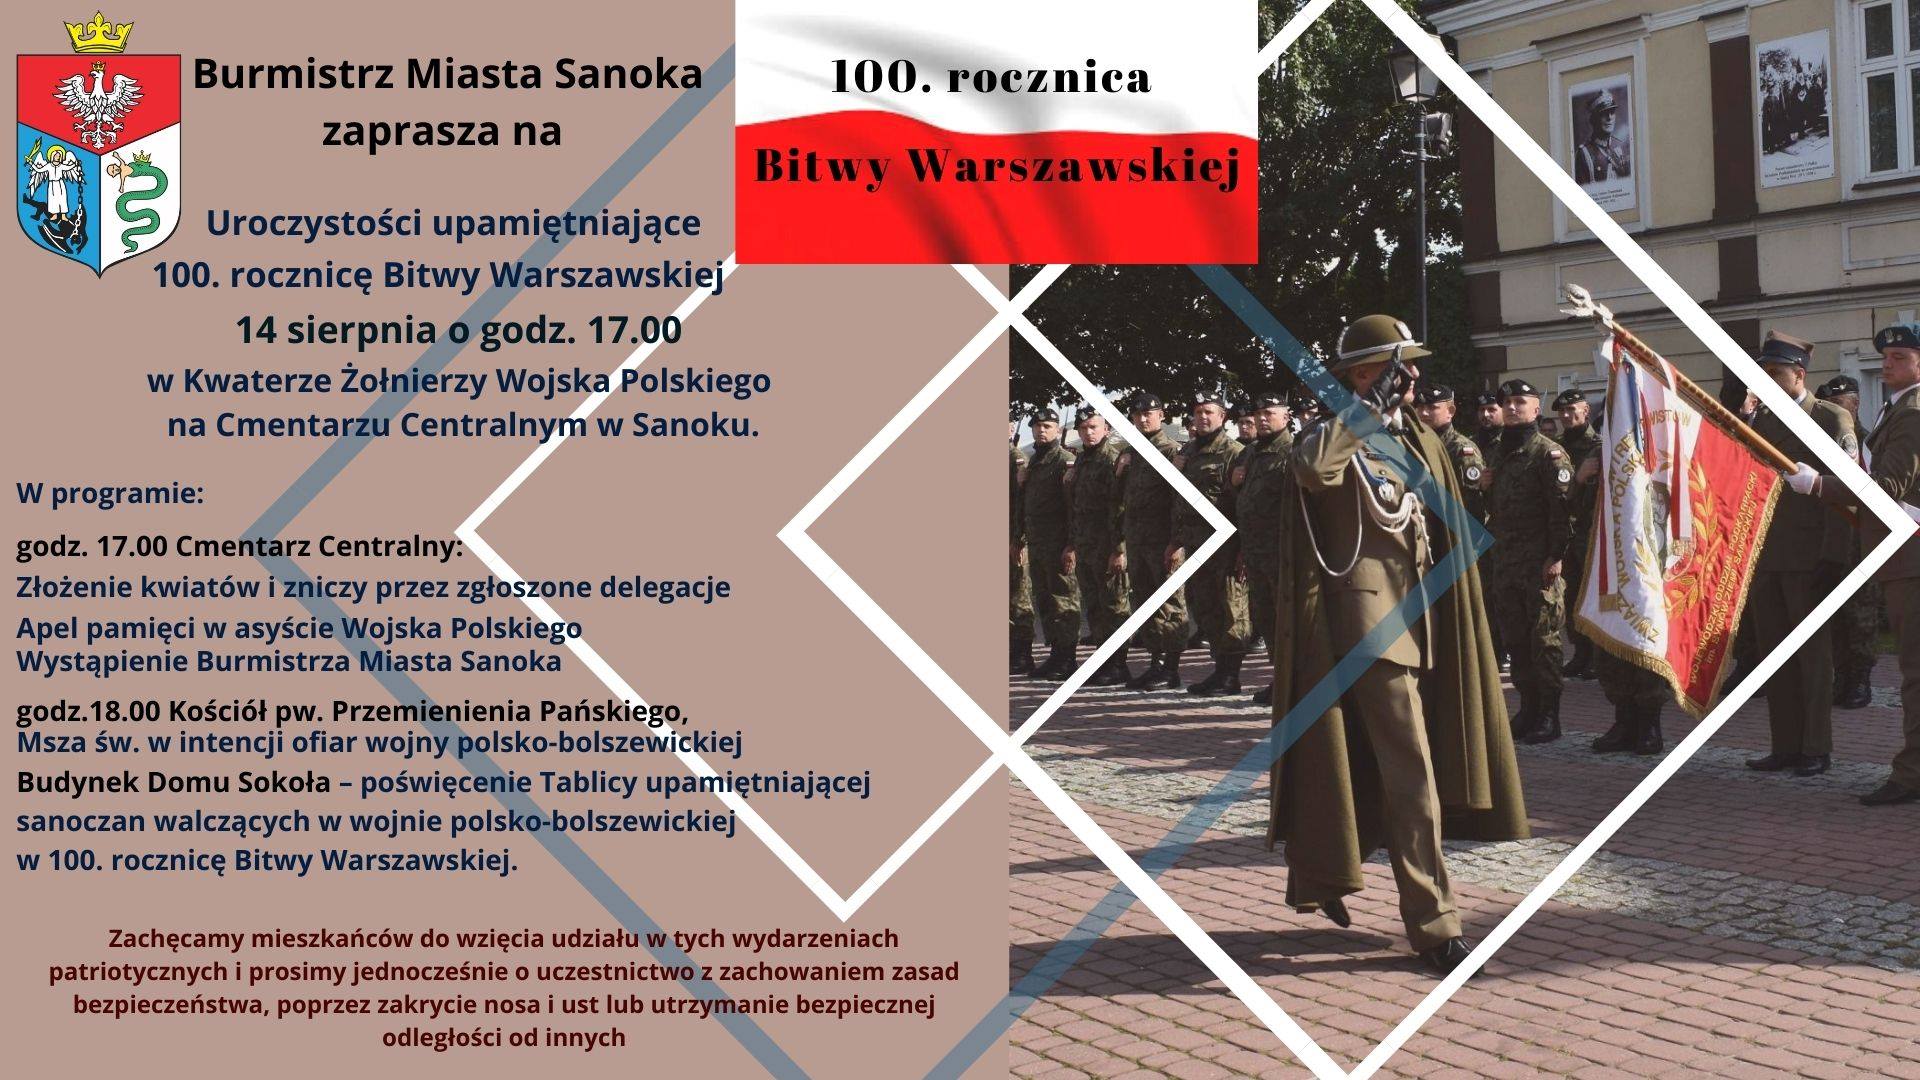 Burmistrz Miasta Sanoka zaprasza na uroczystości upamiętniające 100. rocznicę Bitwy Warszawskiej